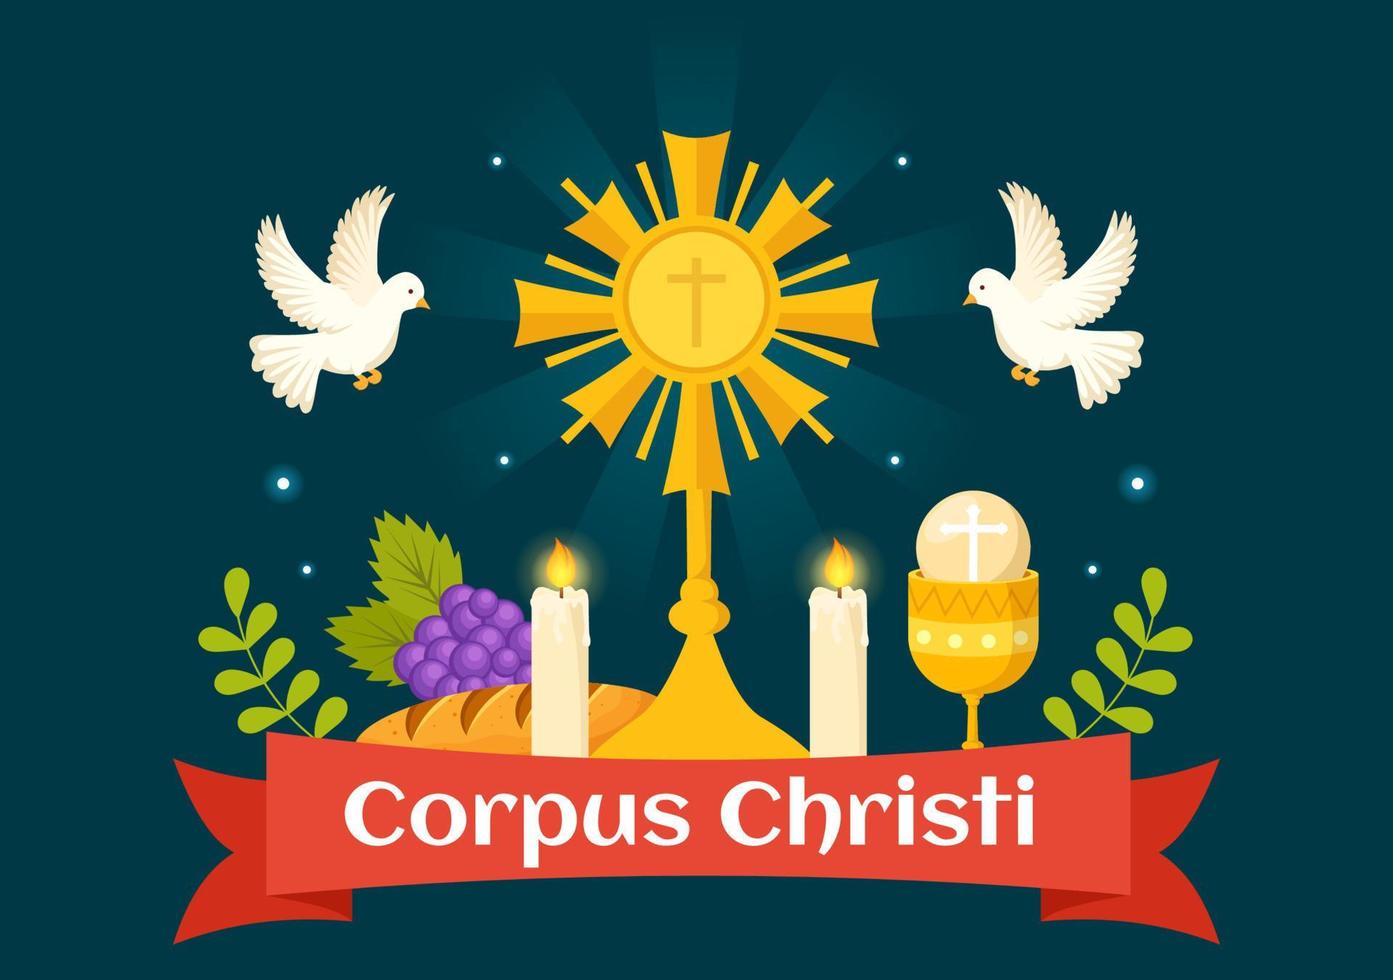 cuerpo christi católico religioso fiesta vector ilustración con banquete día, cruz, un pan y uvas en plano dibujos animados mano dibujado póster plantillas